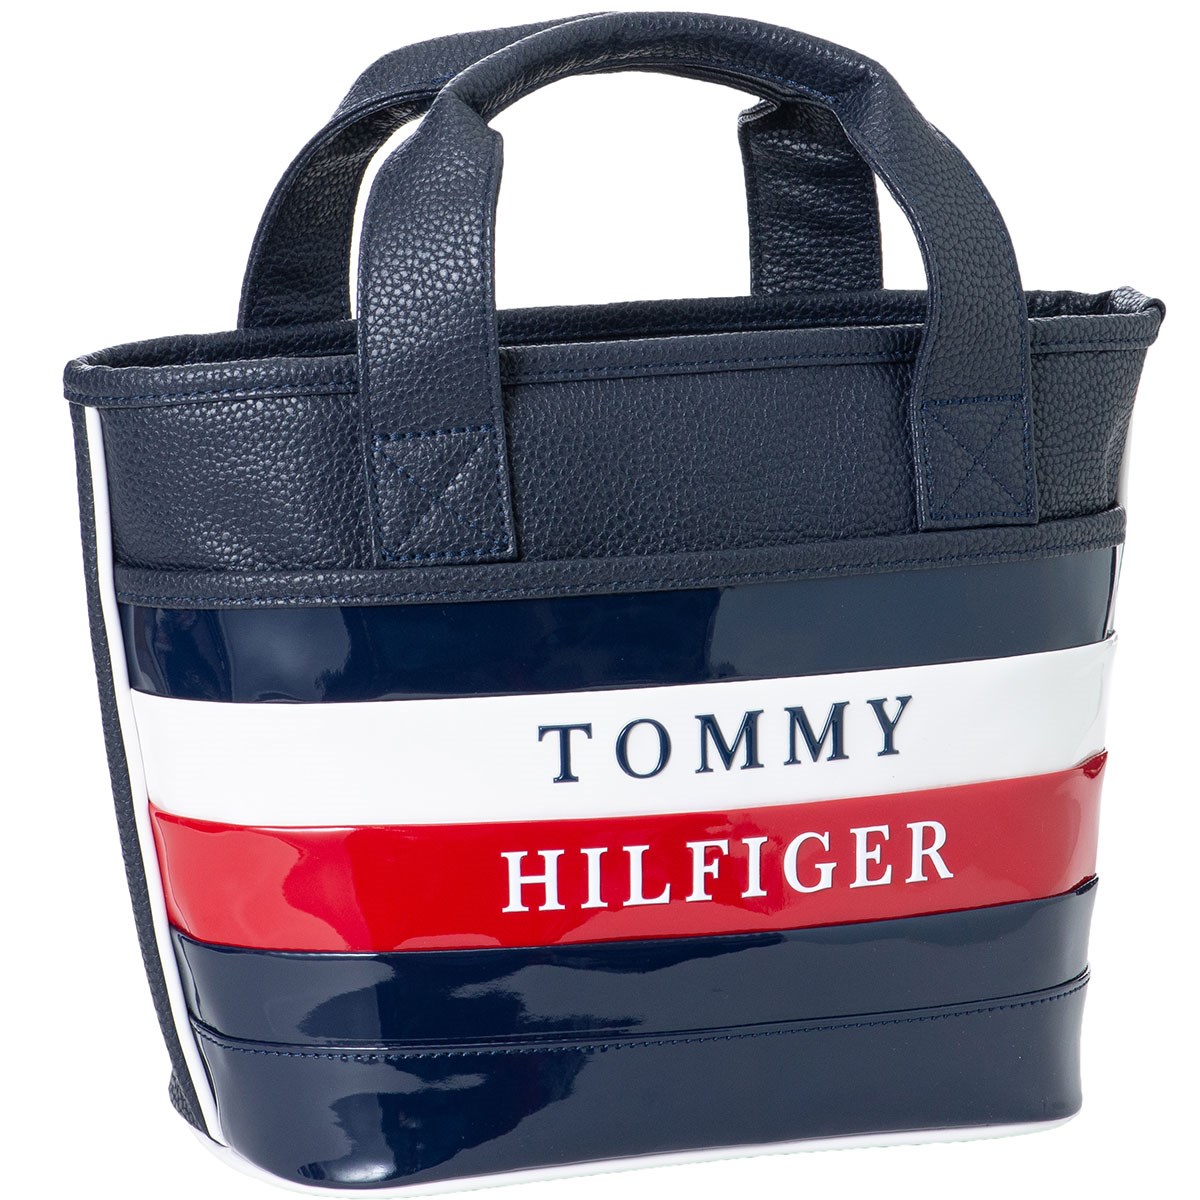 トミー ヒルフィガー レディース GOLF カートバッグ HILFIGER TOMMY メンズ ゴルフ トートバッグ 日本正規品